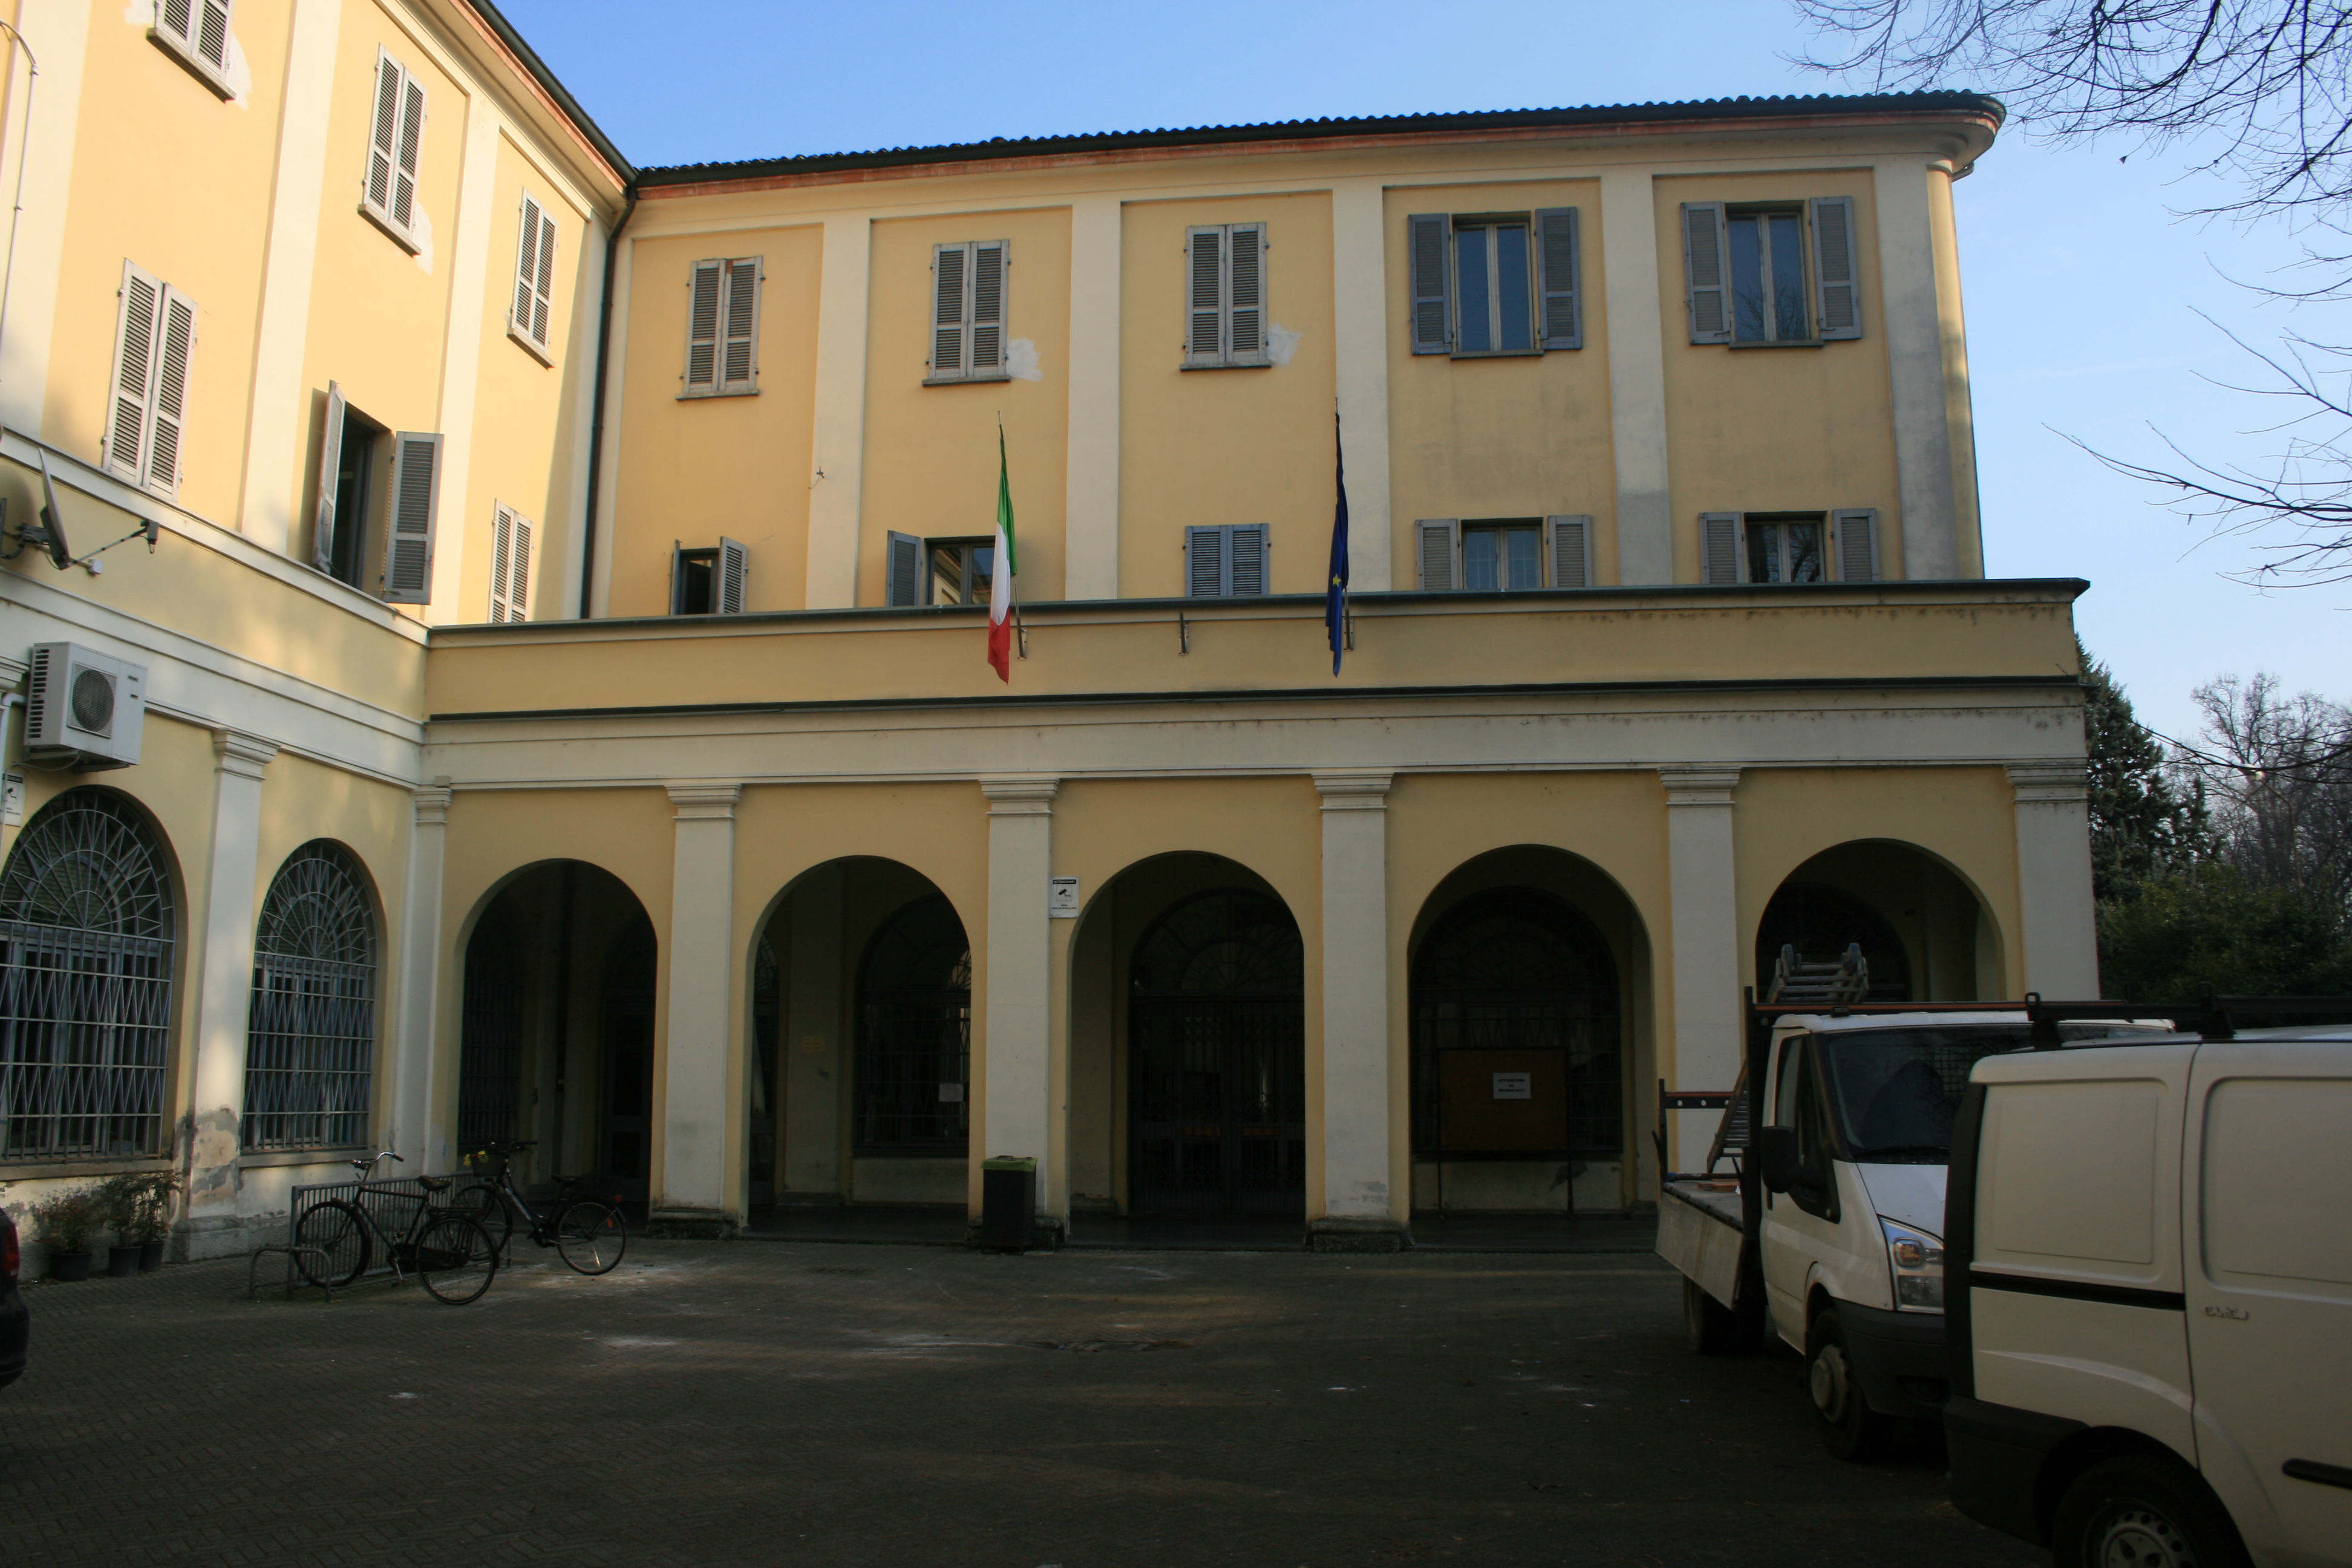 Pacioli school in Crema